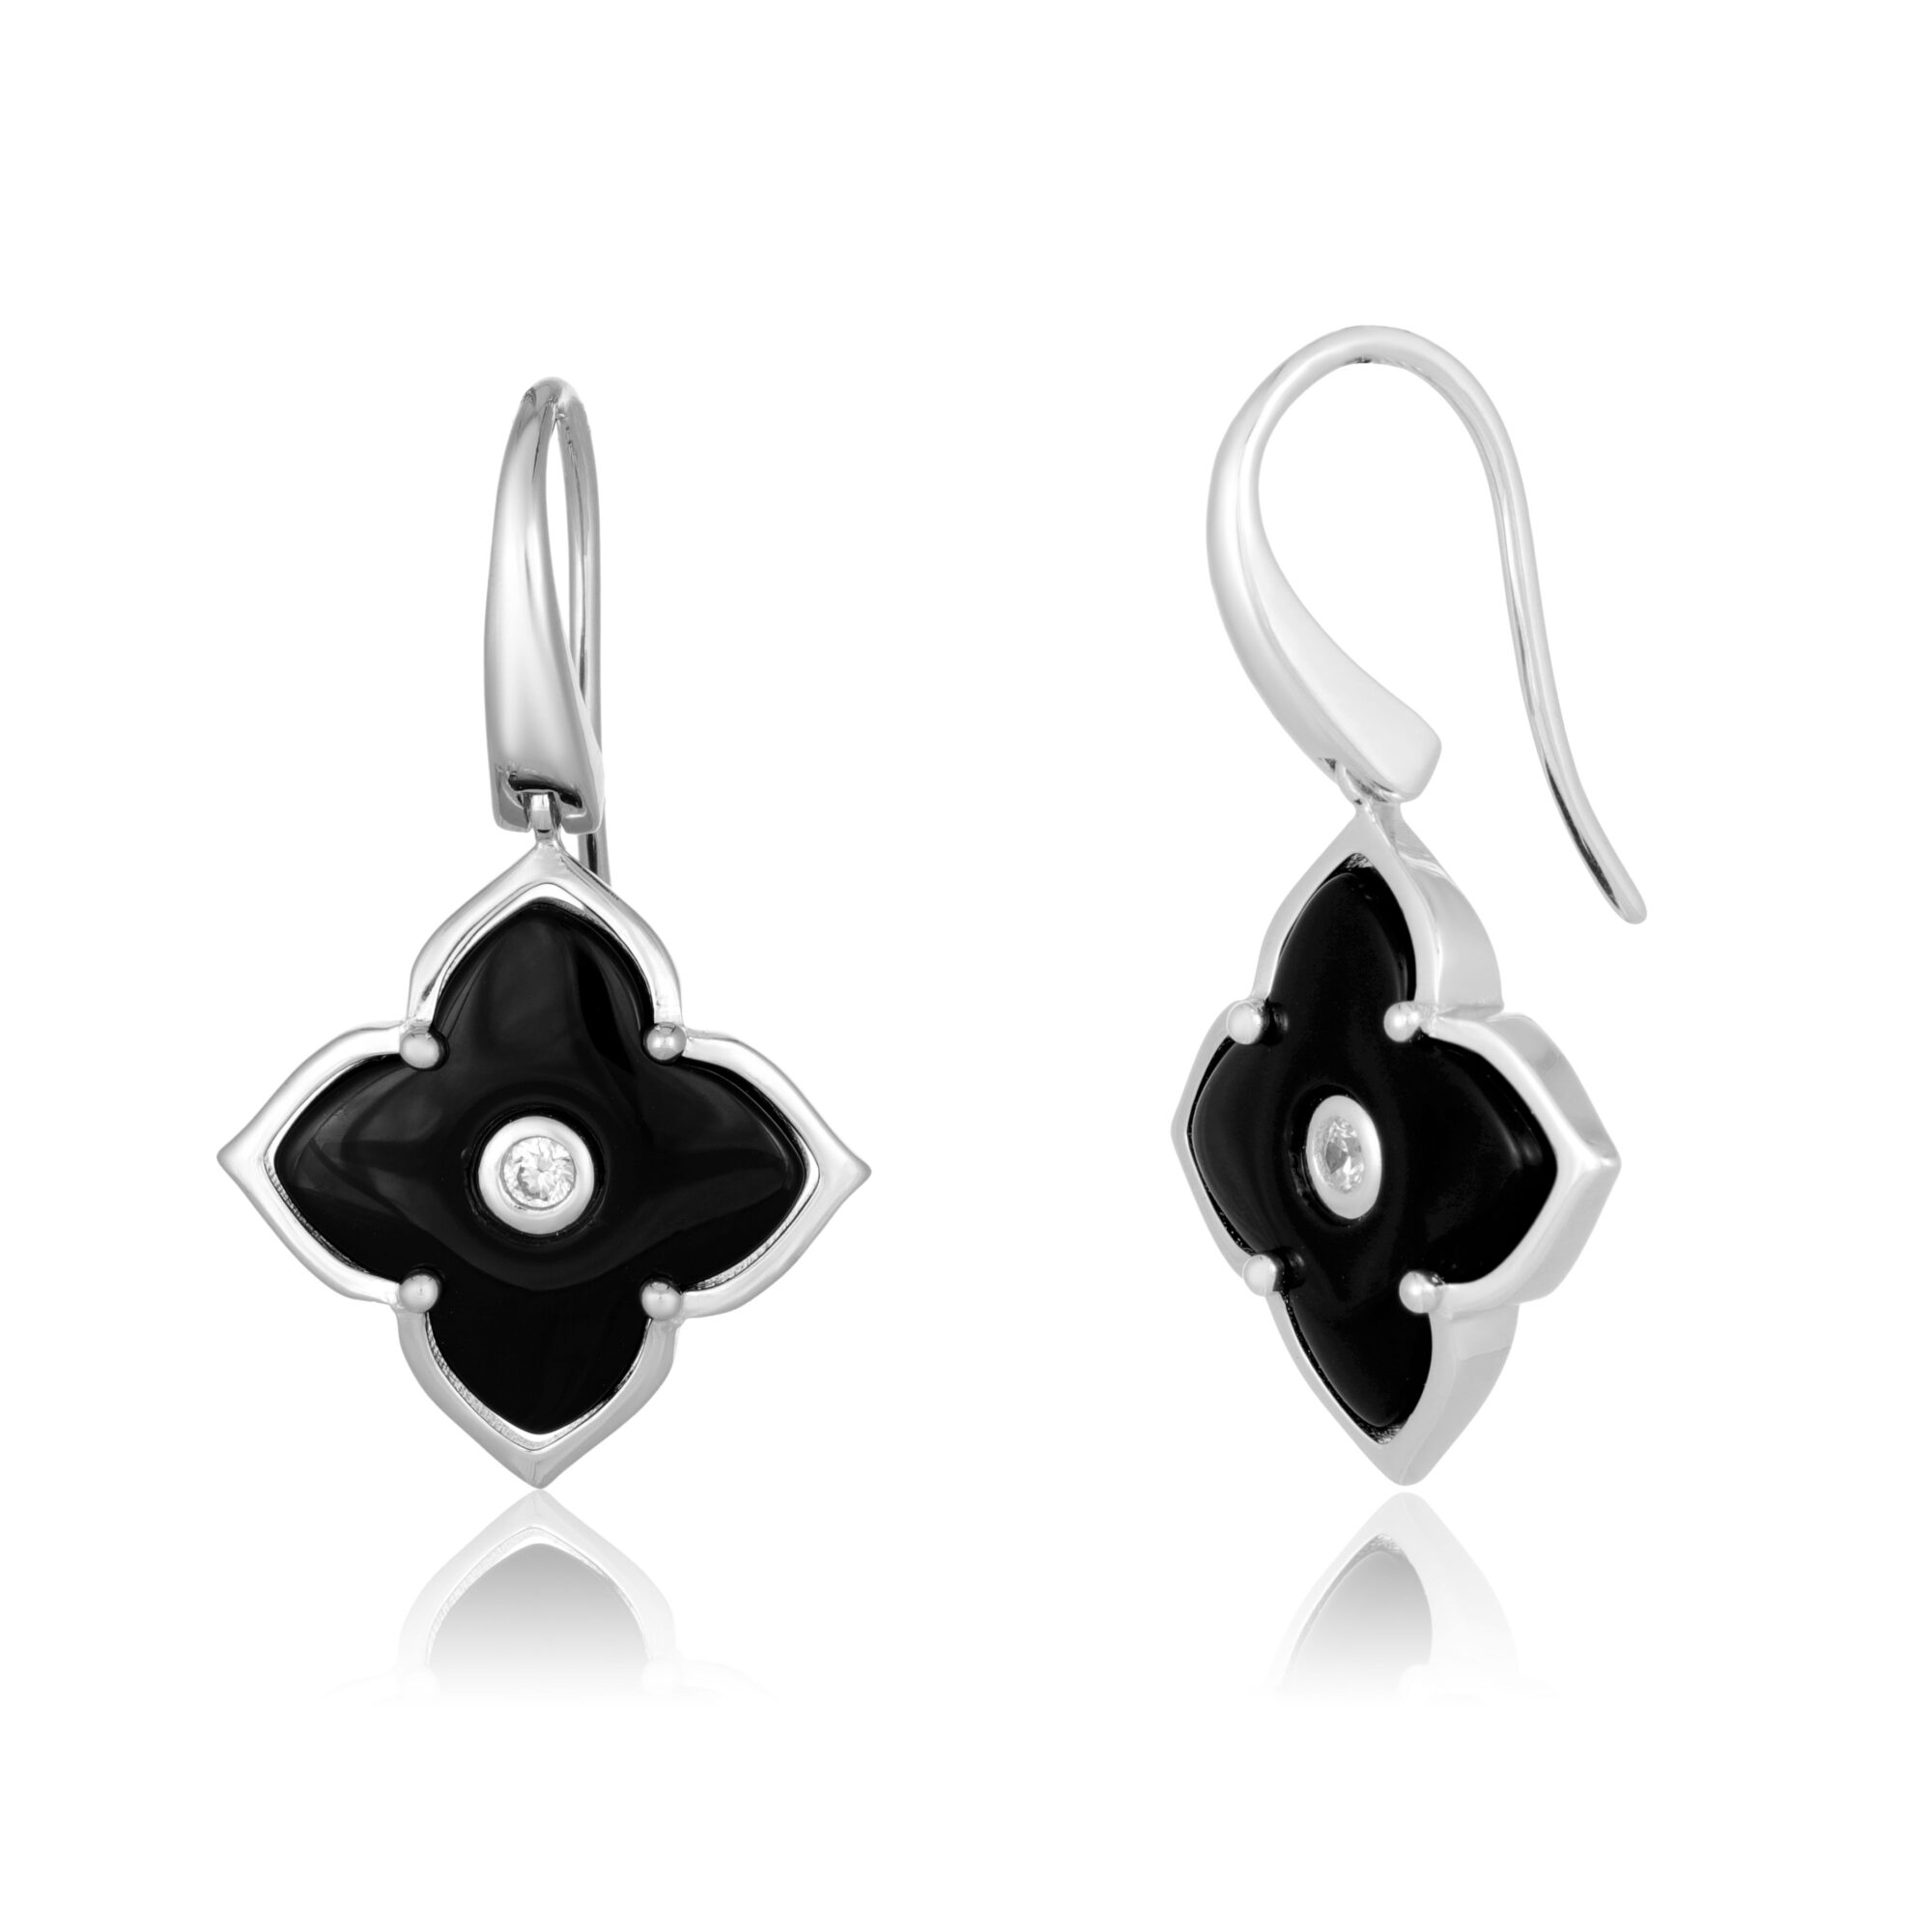 Lavari Jeweler Women’s Black Onyx Flower Drop Dangle Earrings with Fishhooks, 925 Sterling Silver, 16 MM